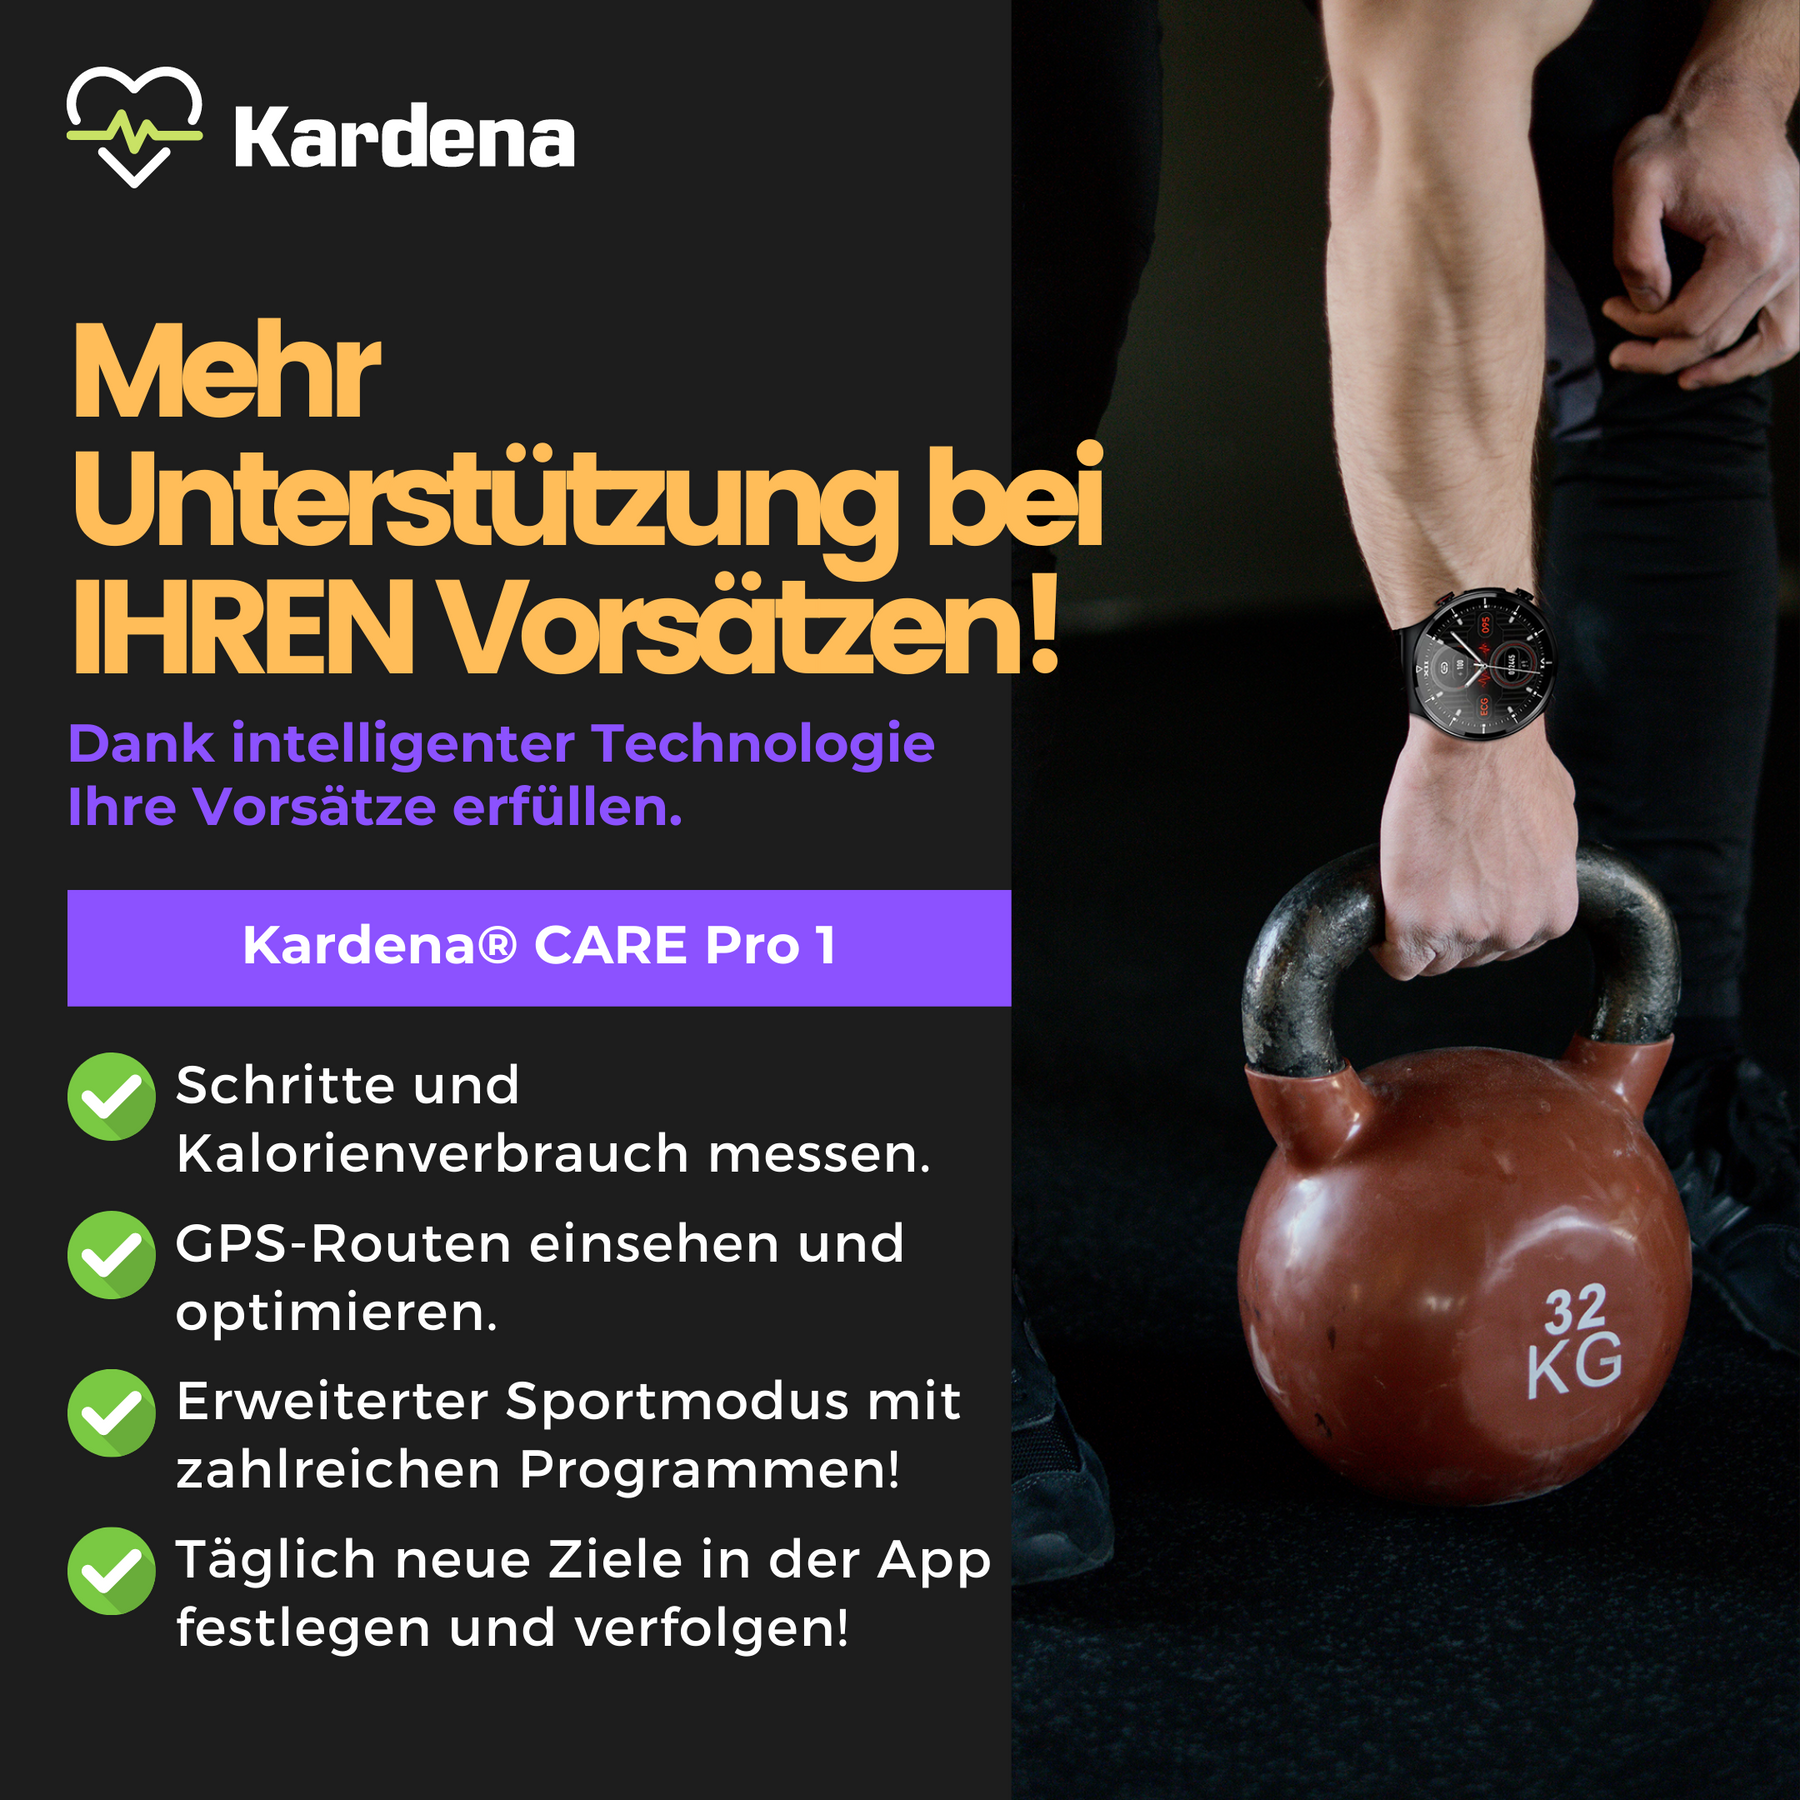 Kardena® CARE Pro 1